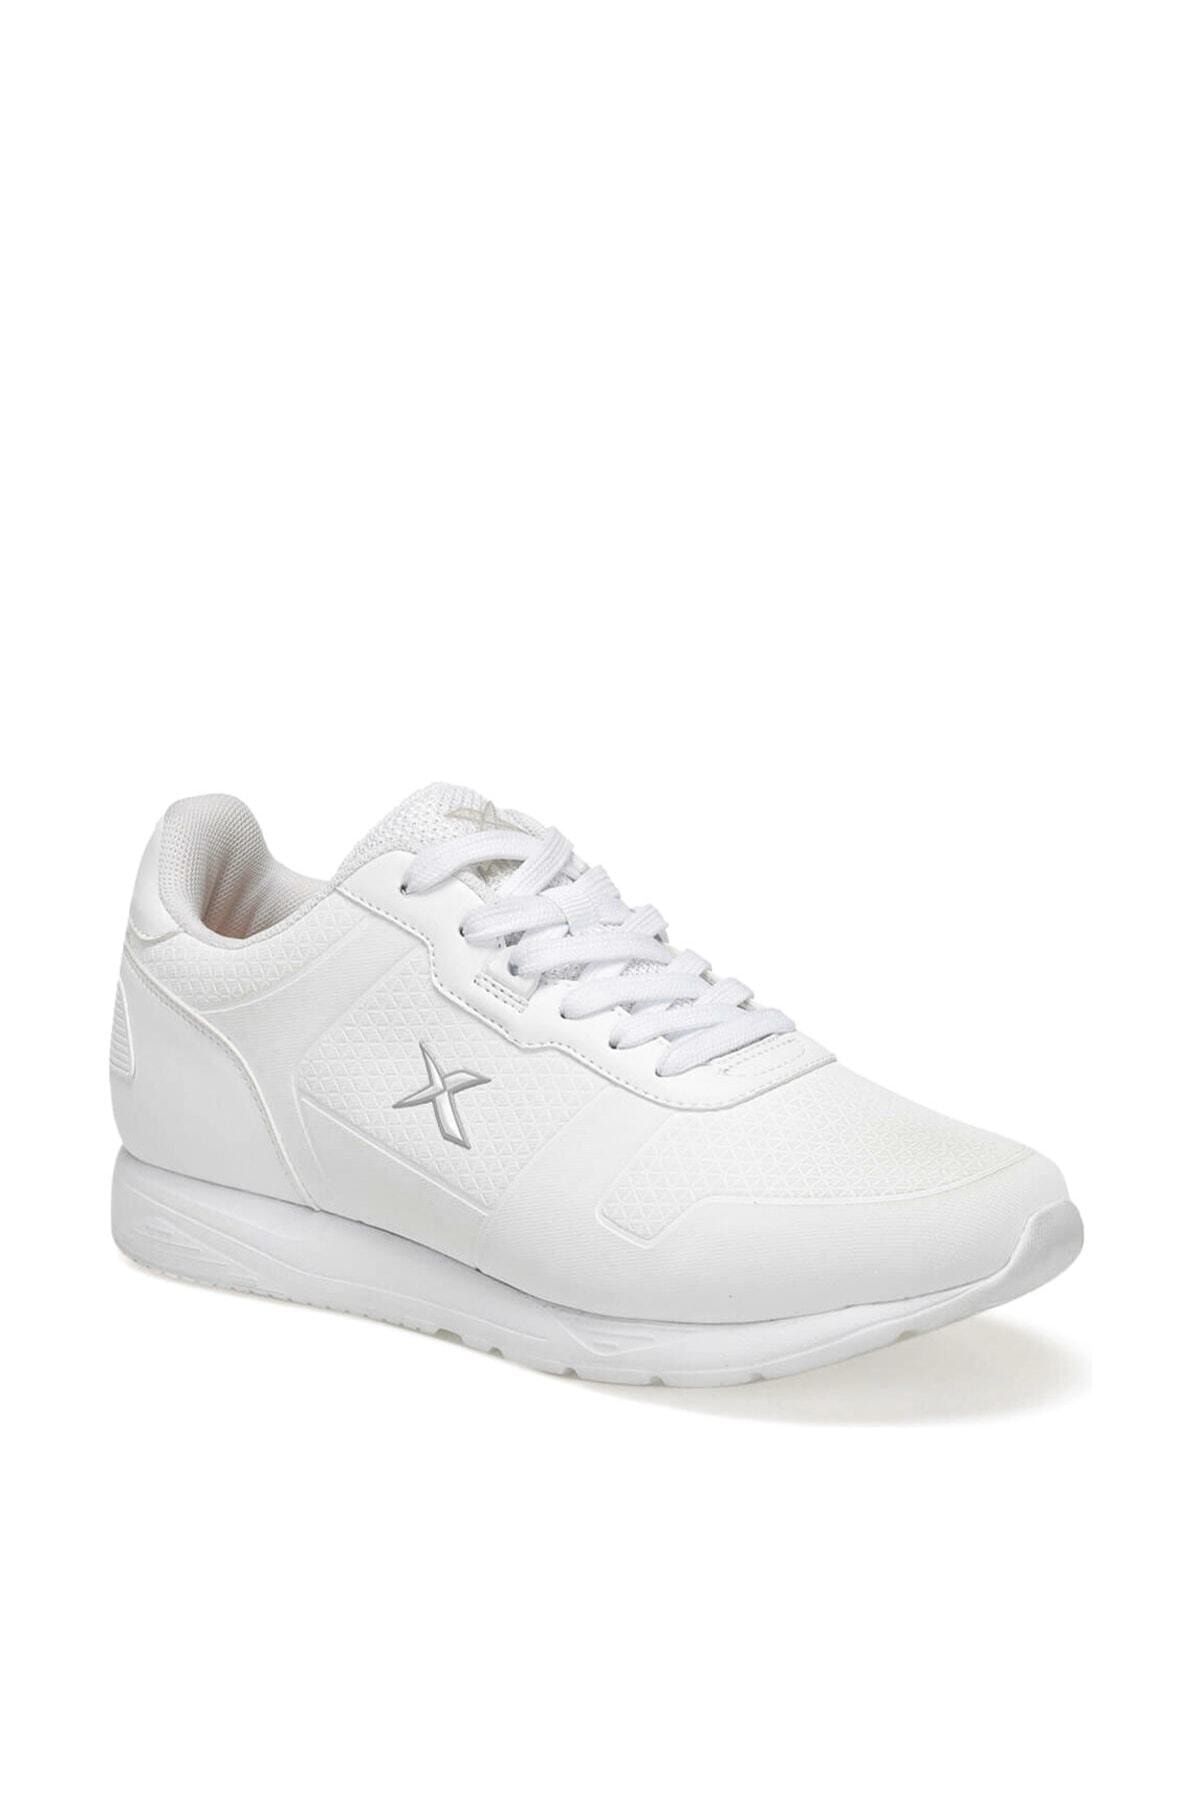 Kinetix MORGAN M 9PR Beyaz Erkek Sneaker Ayakkabı 100417073